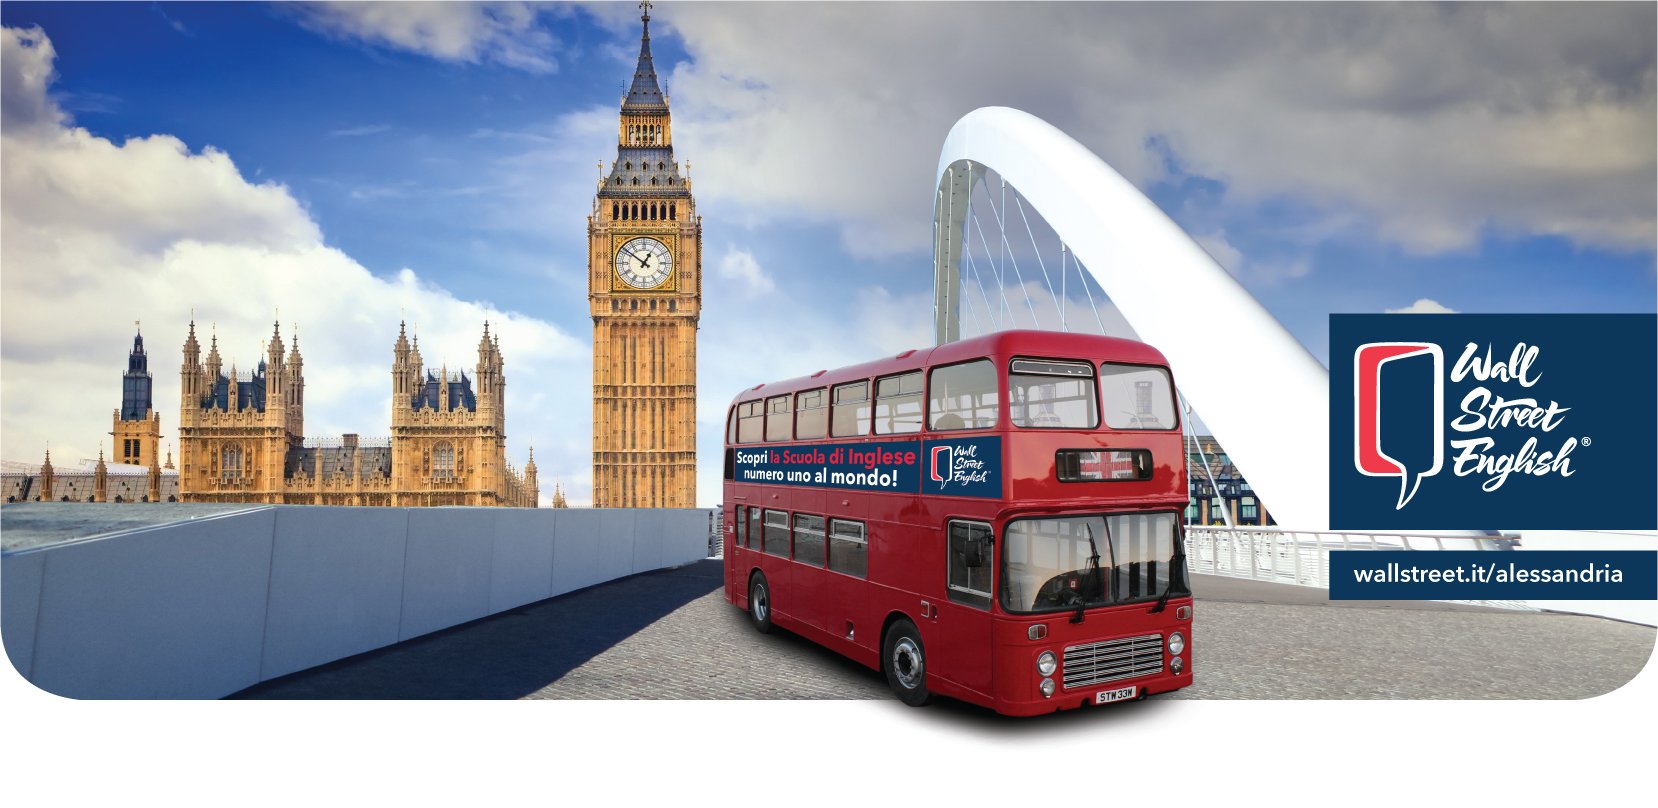 Il viaggio per conoscere l’inglese inizia dal London Bus di Wall Street English